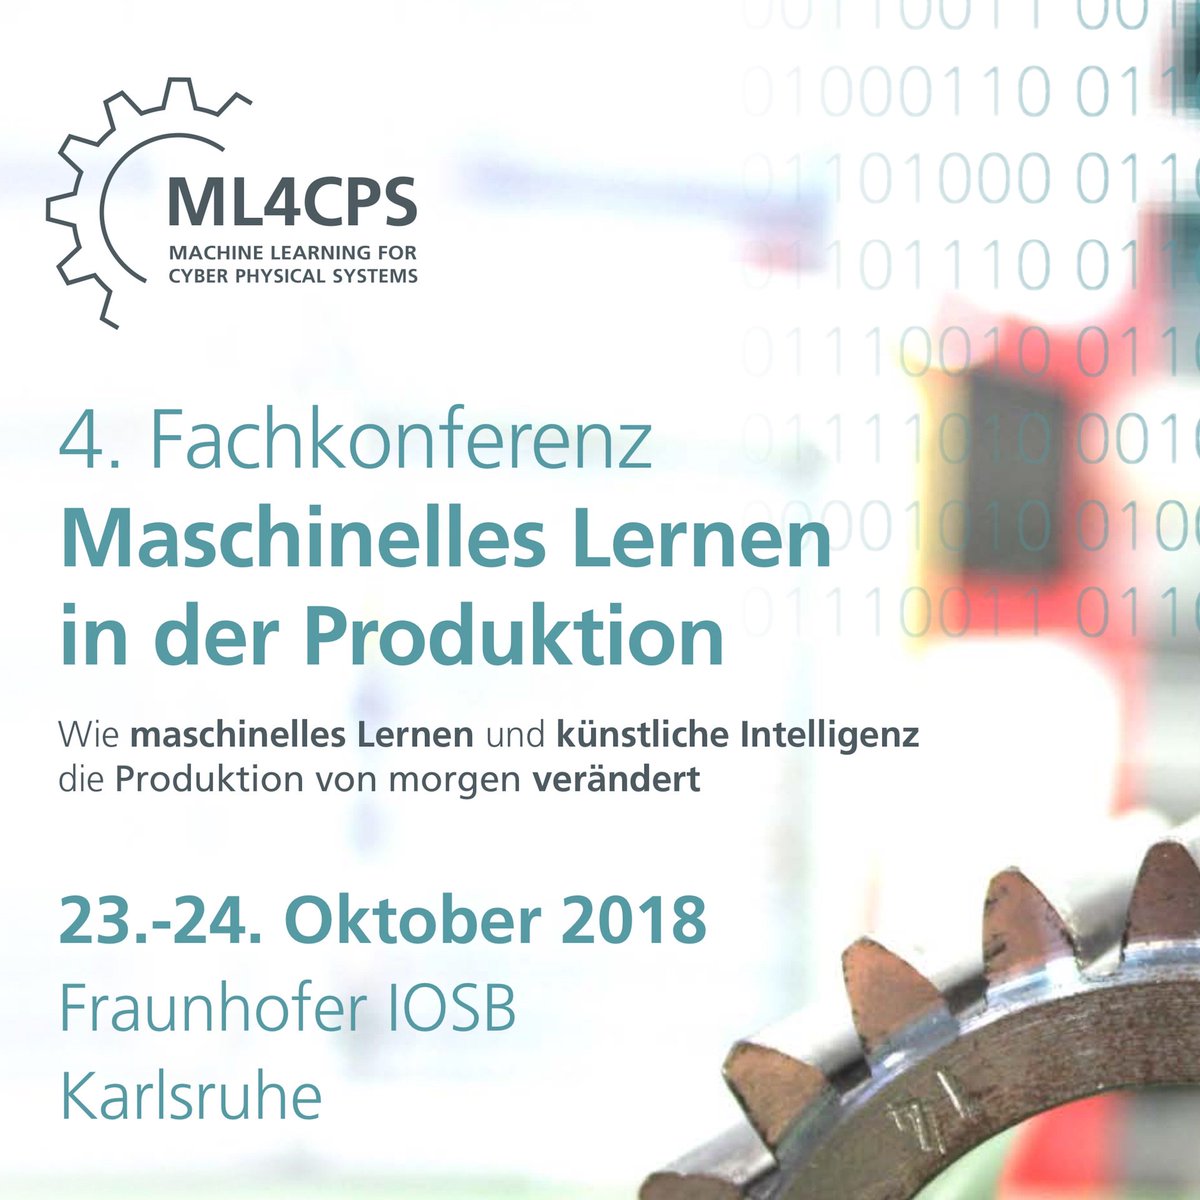 Hotspot für #KI: Die 4. Fachkonferenz ML4CPS #MachineLearning for #cyberphysicalsystems am 23./24.10.2018 am Fraunhofer Institut in Karlsruhe. Mit dabei: jambit‘s KI-Profis. 
jamb.it/ml4cps-2018